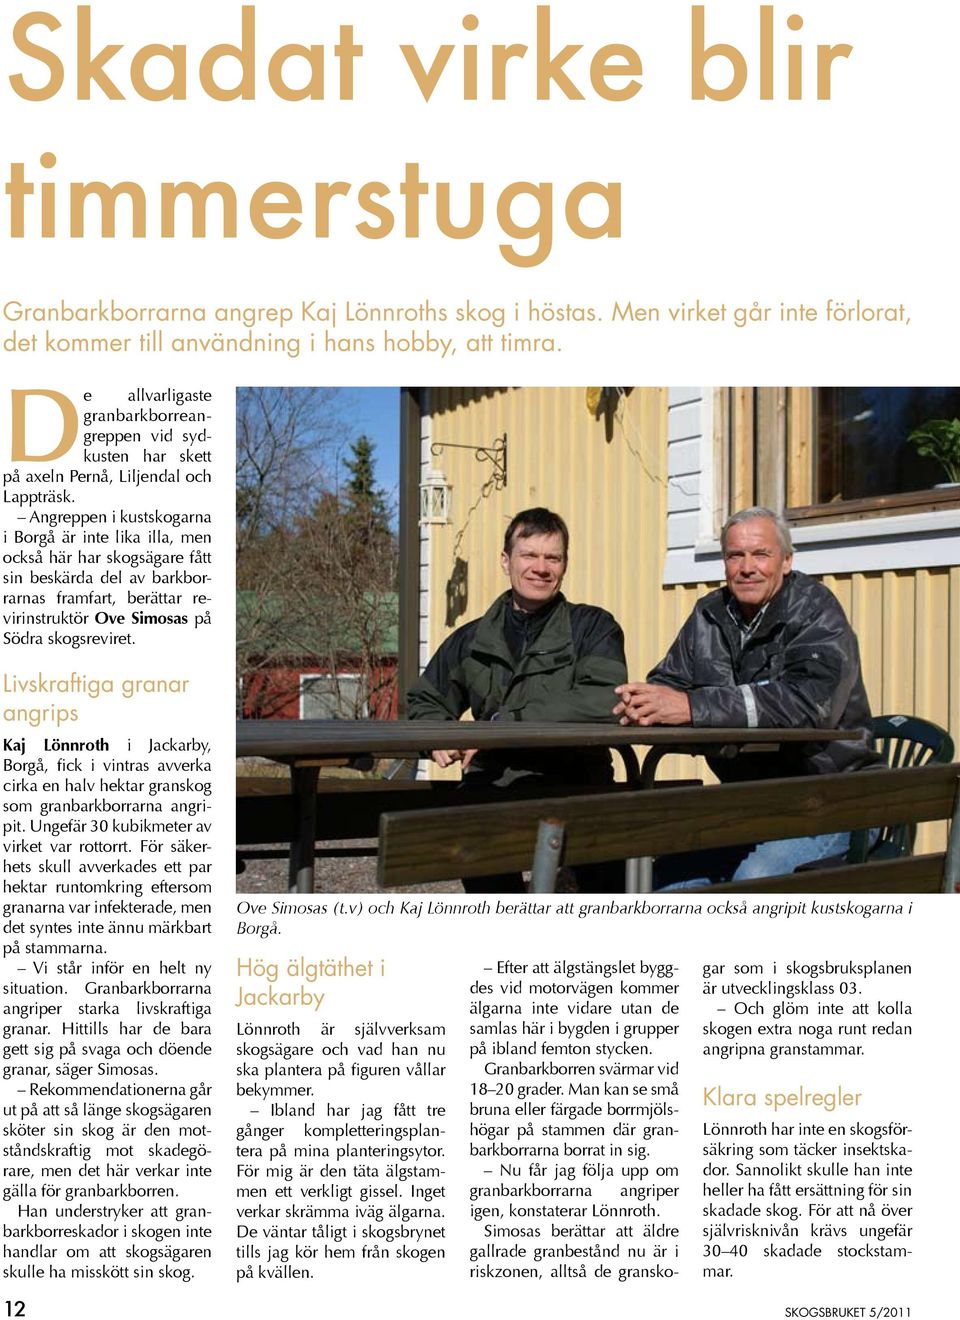 Angreppen i kustskogarna i Borgå är inte lika illa, men också här har skogsägare fått sin beskärda del av barkborrarnas framfart, berättar revirinstruktör Ove Simosas på Södra skogsreviret.